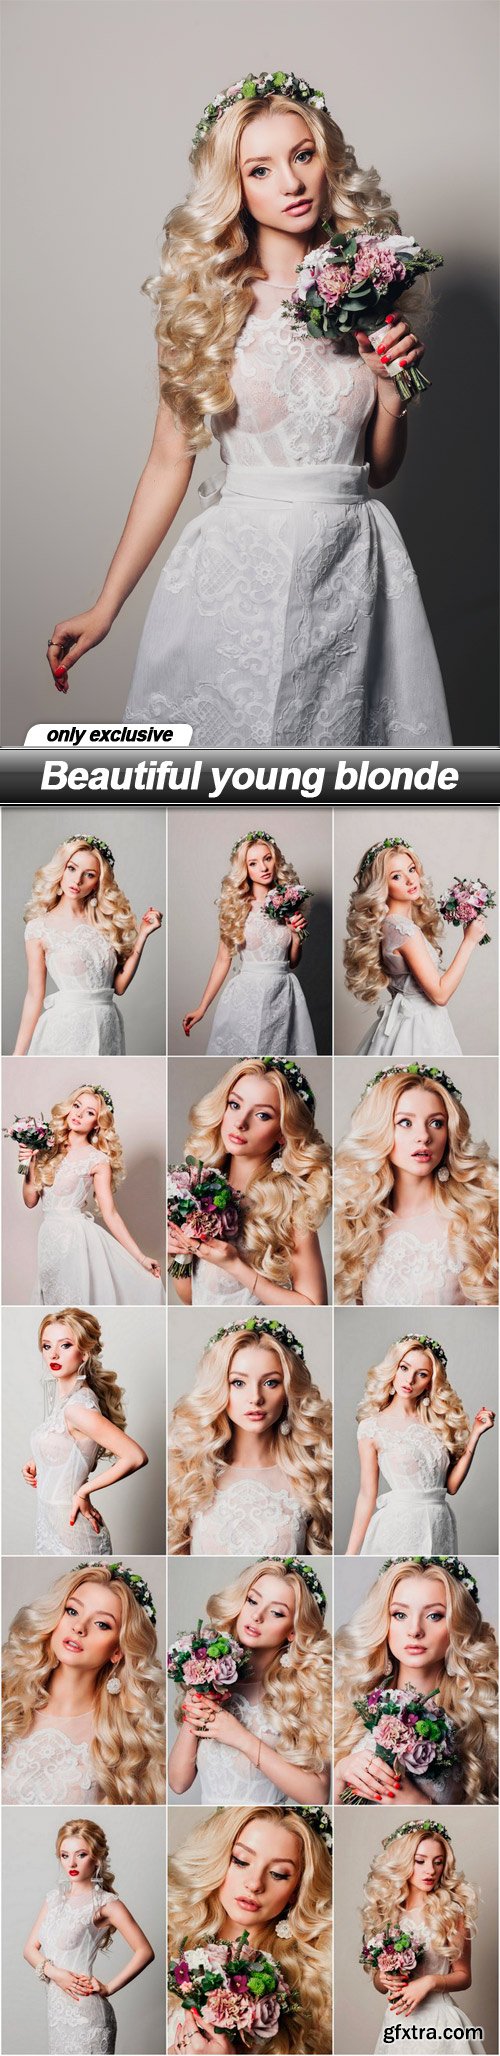 Beautiful young blonde - 15 UHQ JPEG